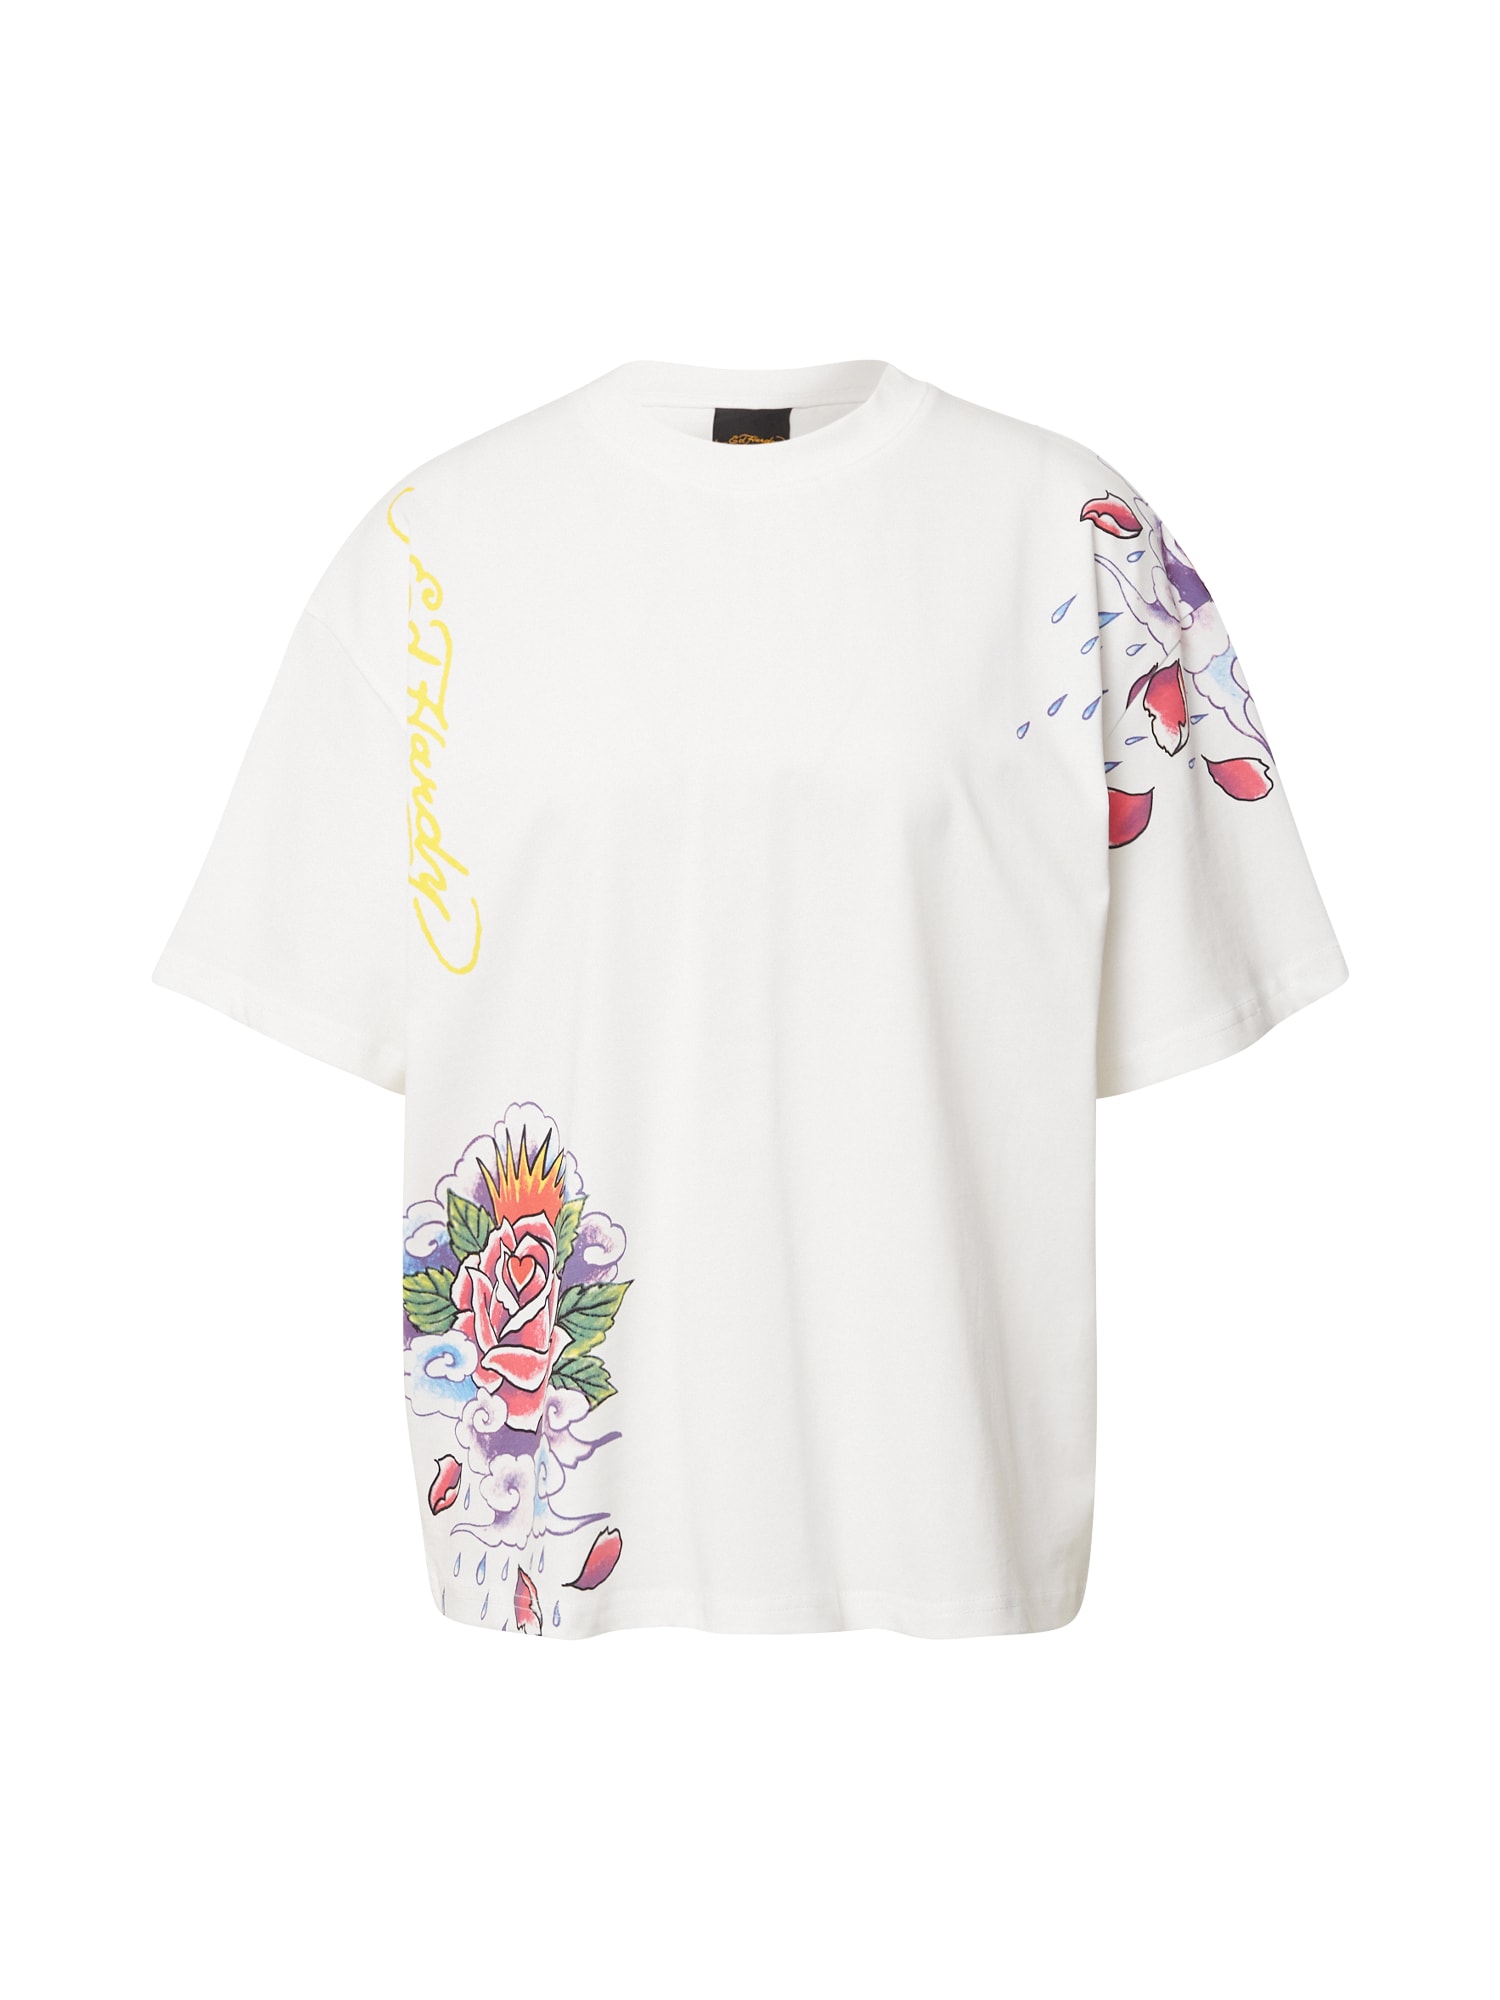 Ed Hardy Marškinėliai 'Raining Roses' mišrios spalvos / balta